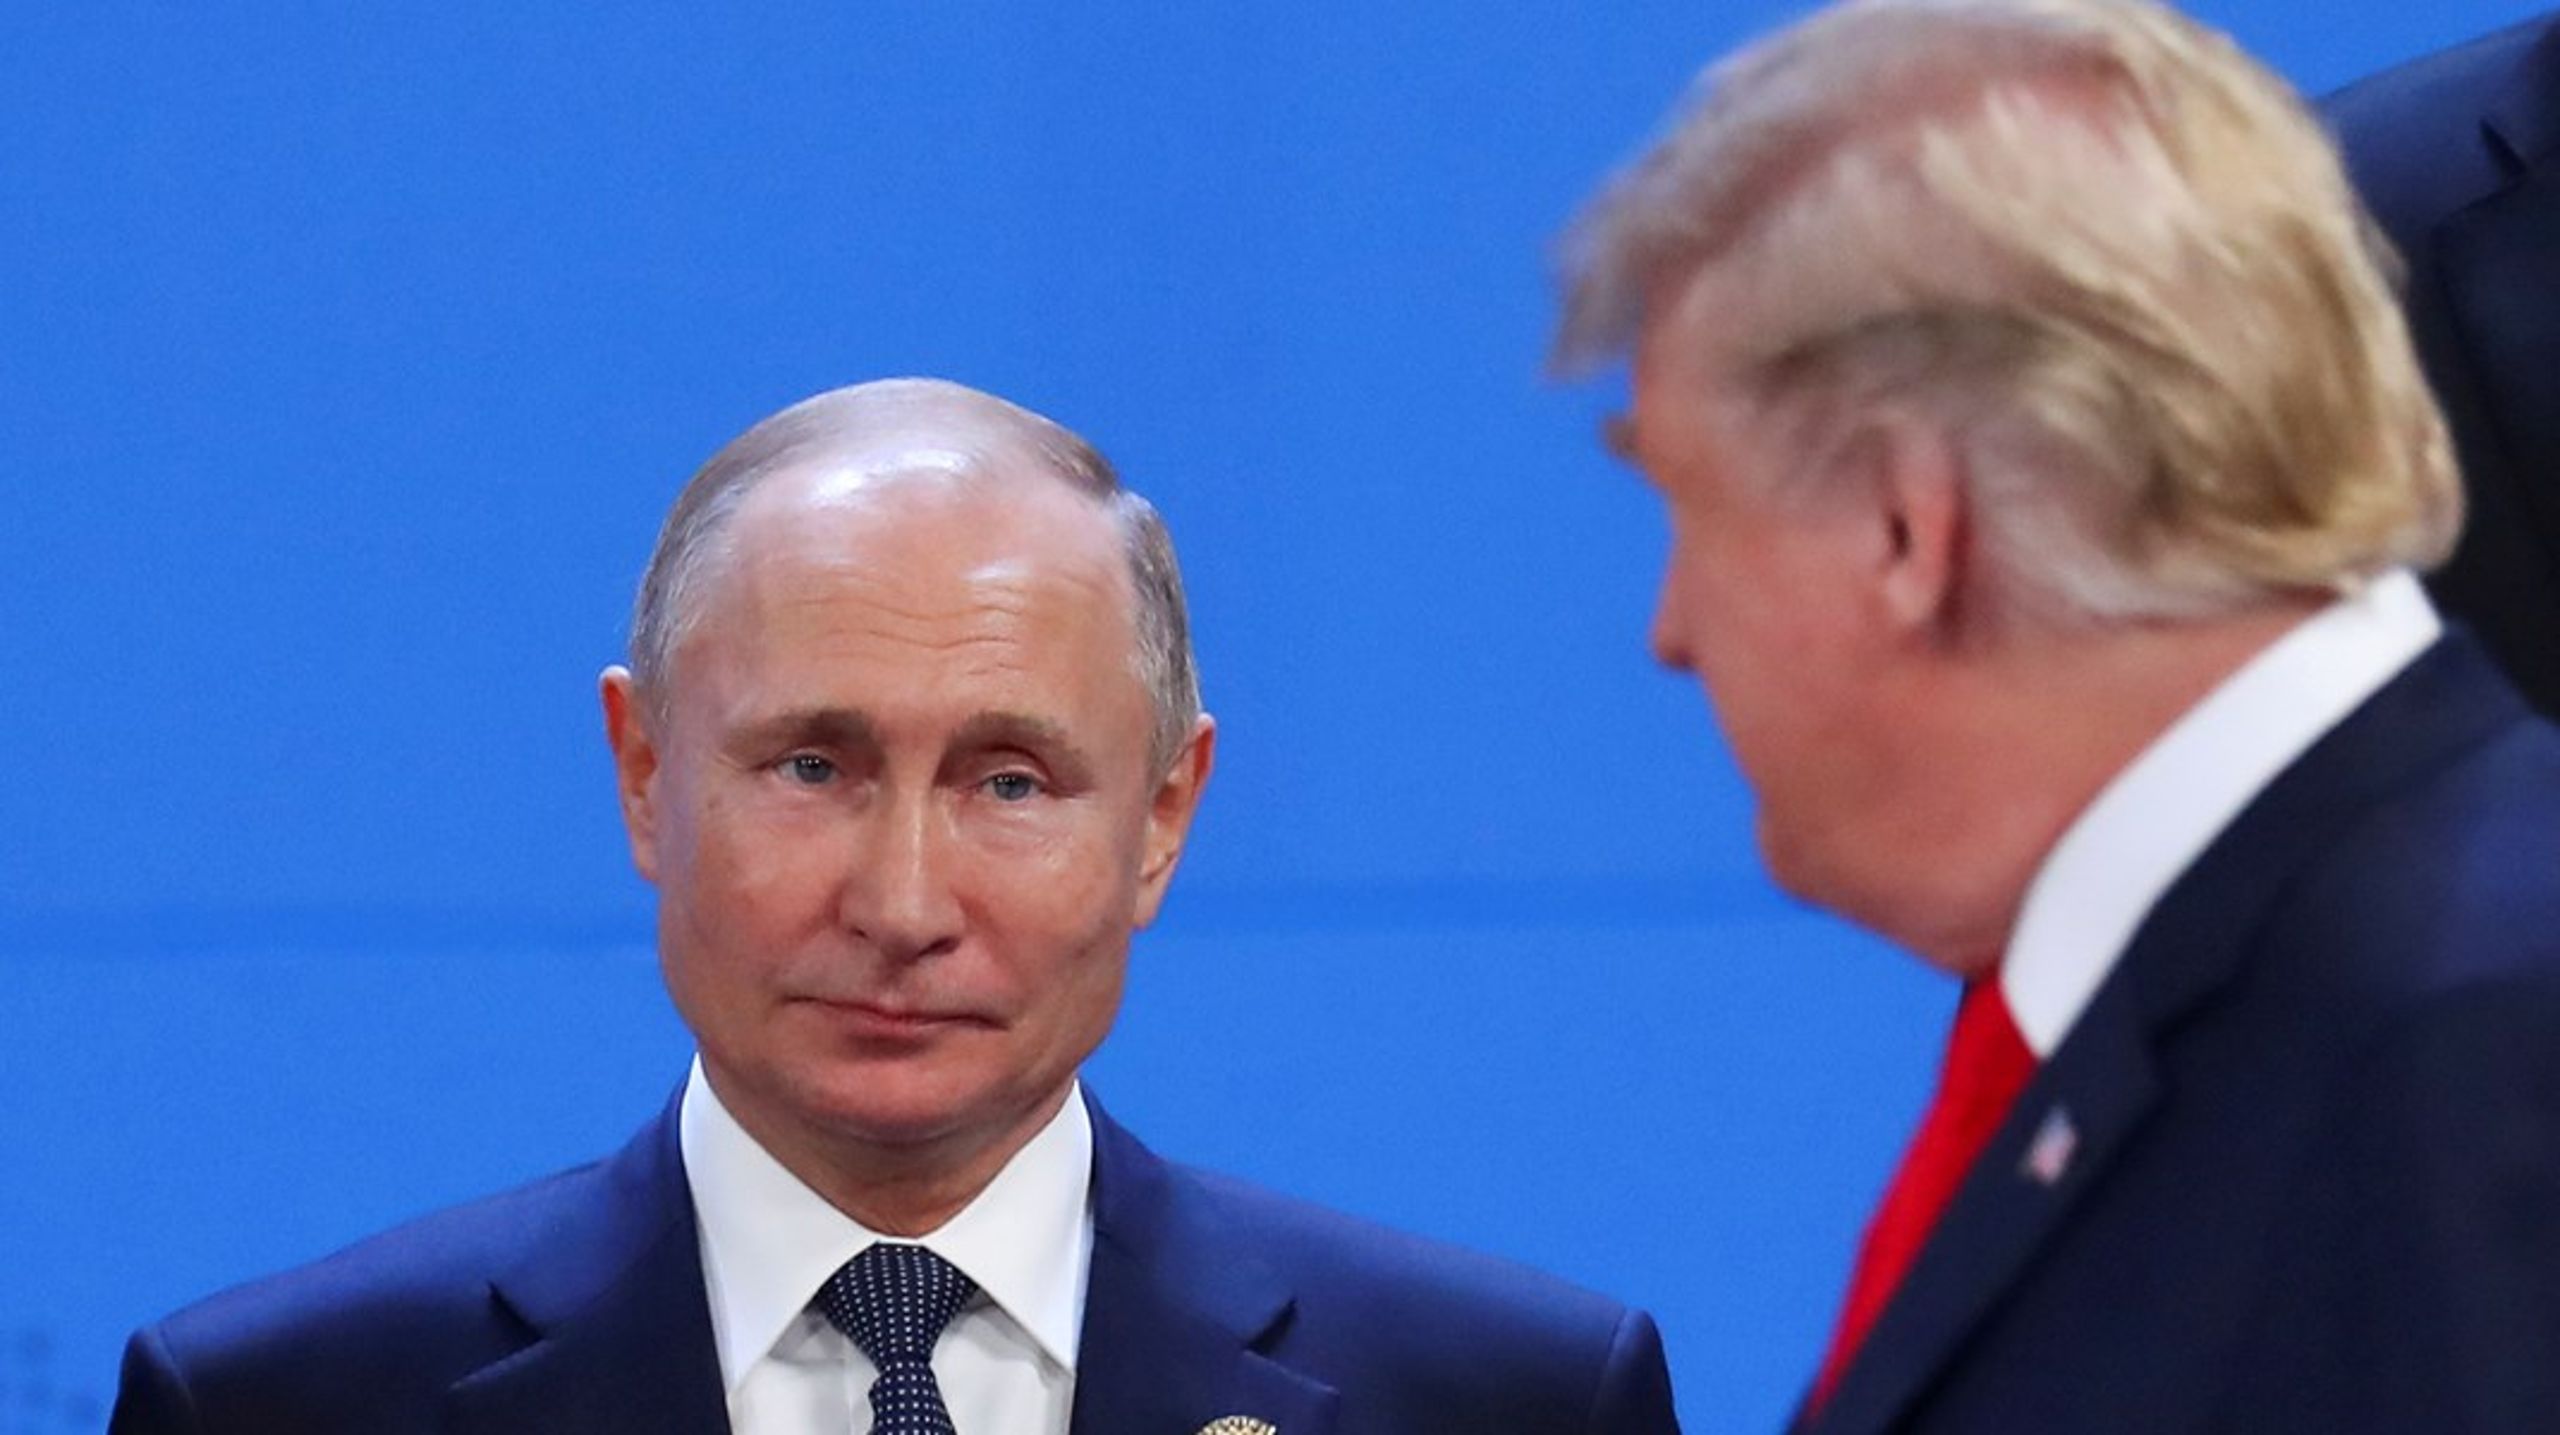 Vladimir Putin og Donald Trump har med deres handlinger vist, at coronavaccinerne er våben i ny geopolitisk kamp om magtbalancerne, skriver Mikkel Vedby Rasmussen.